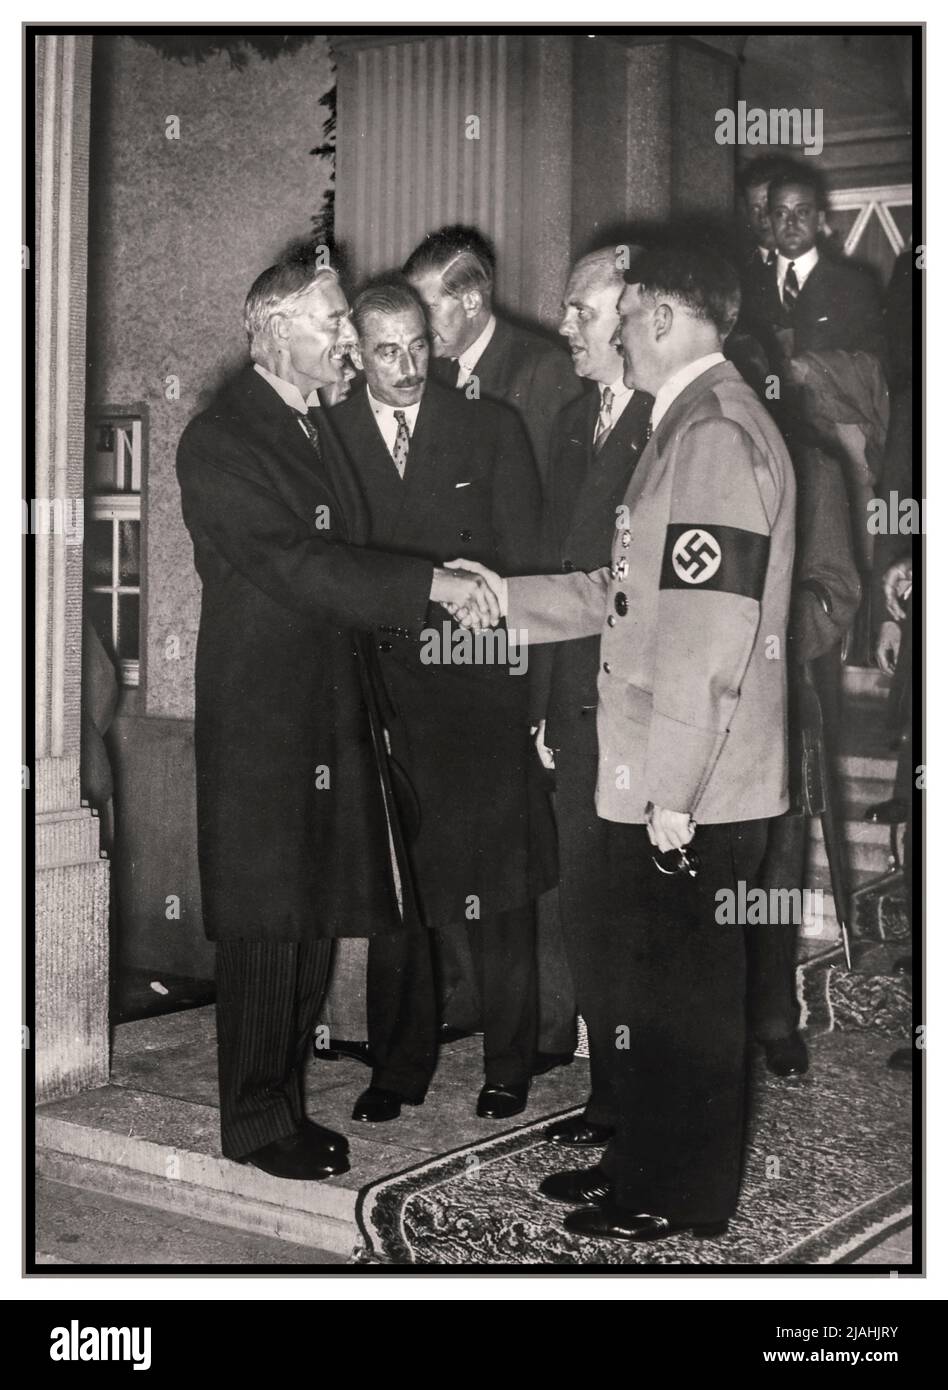 HITLER CHAMBERLAIN 1938 Propaganda immagine di Neville Chamberlain primo Ministro britannico scuotendo le mani e incontrando il nazista Adolf Hitler a Berlino Germania 30th settembre 1938 Foto Stock